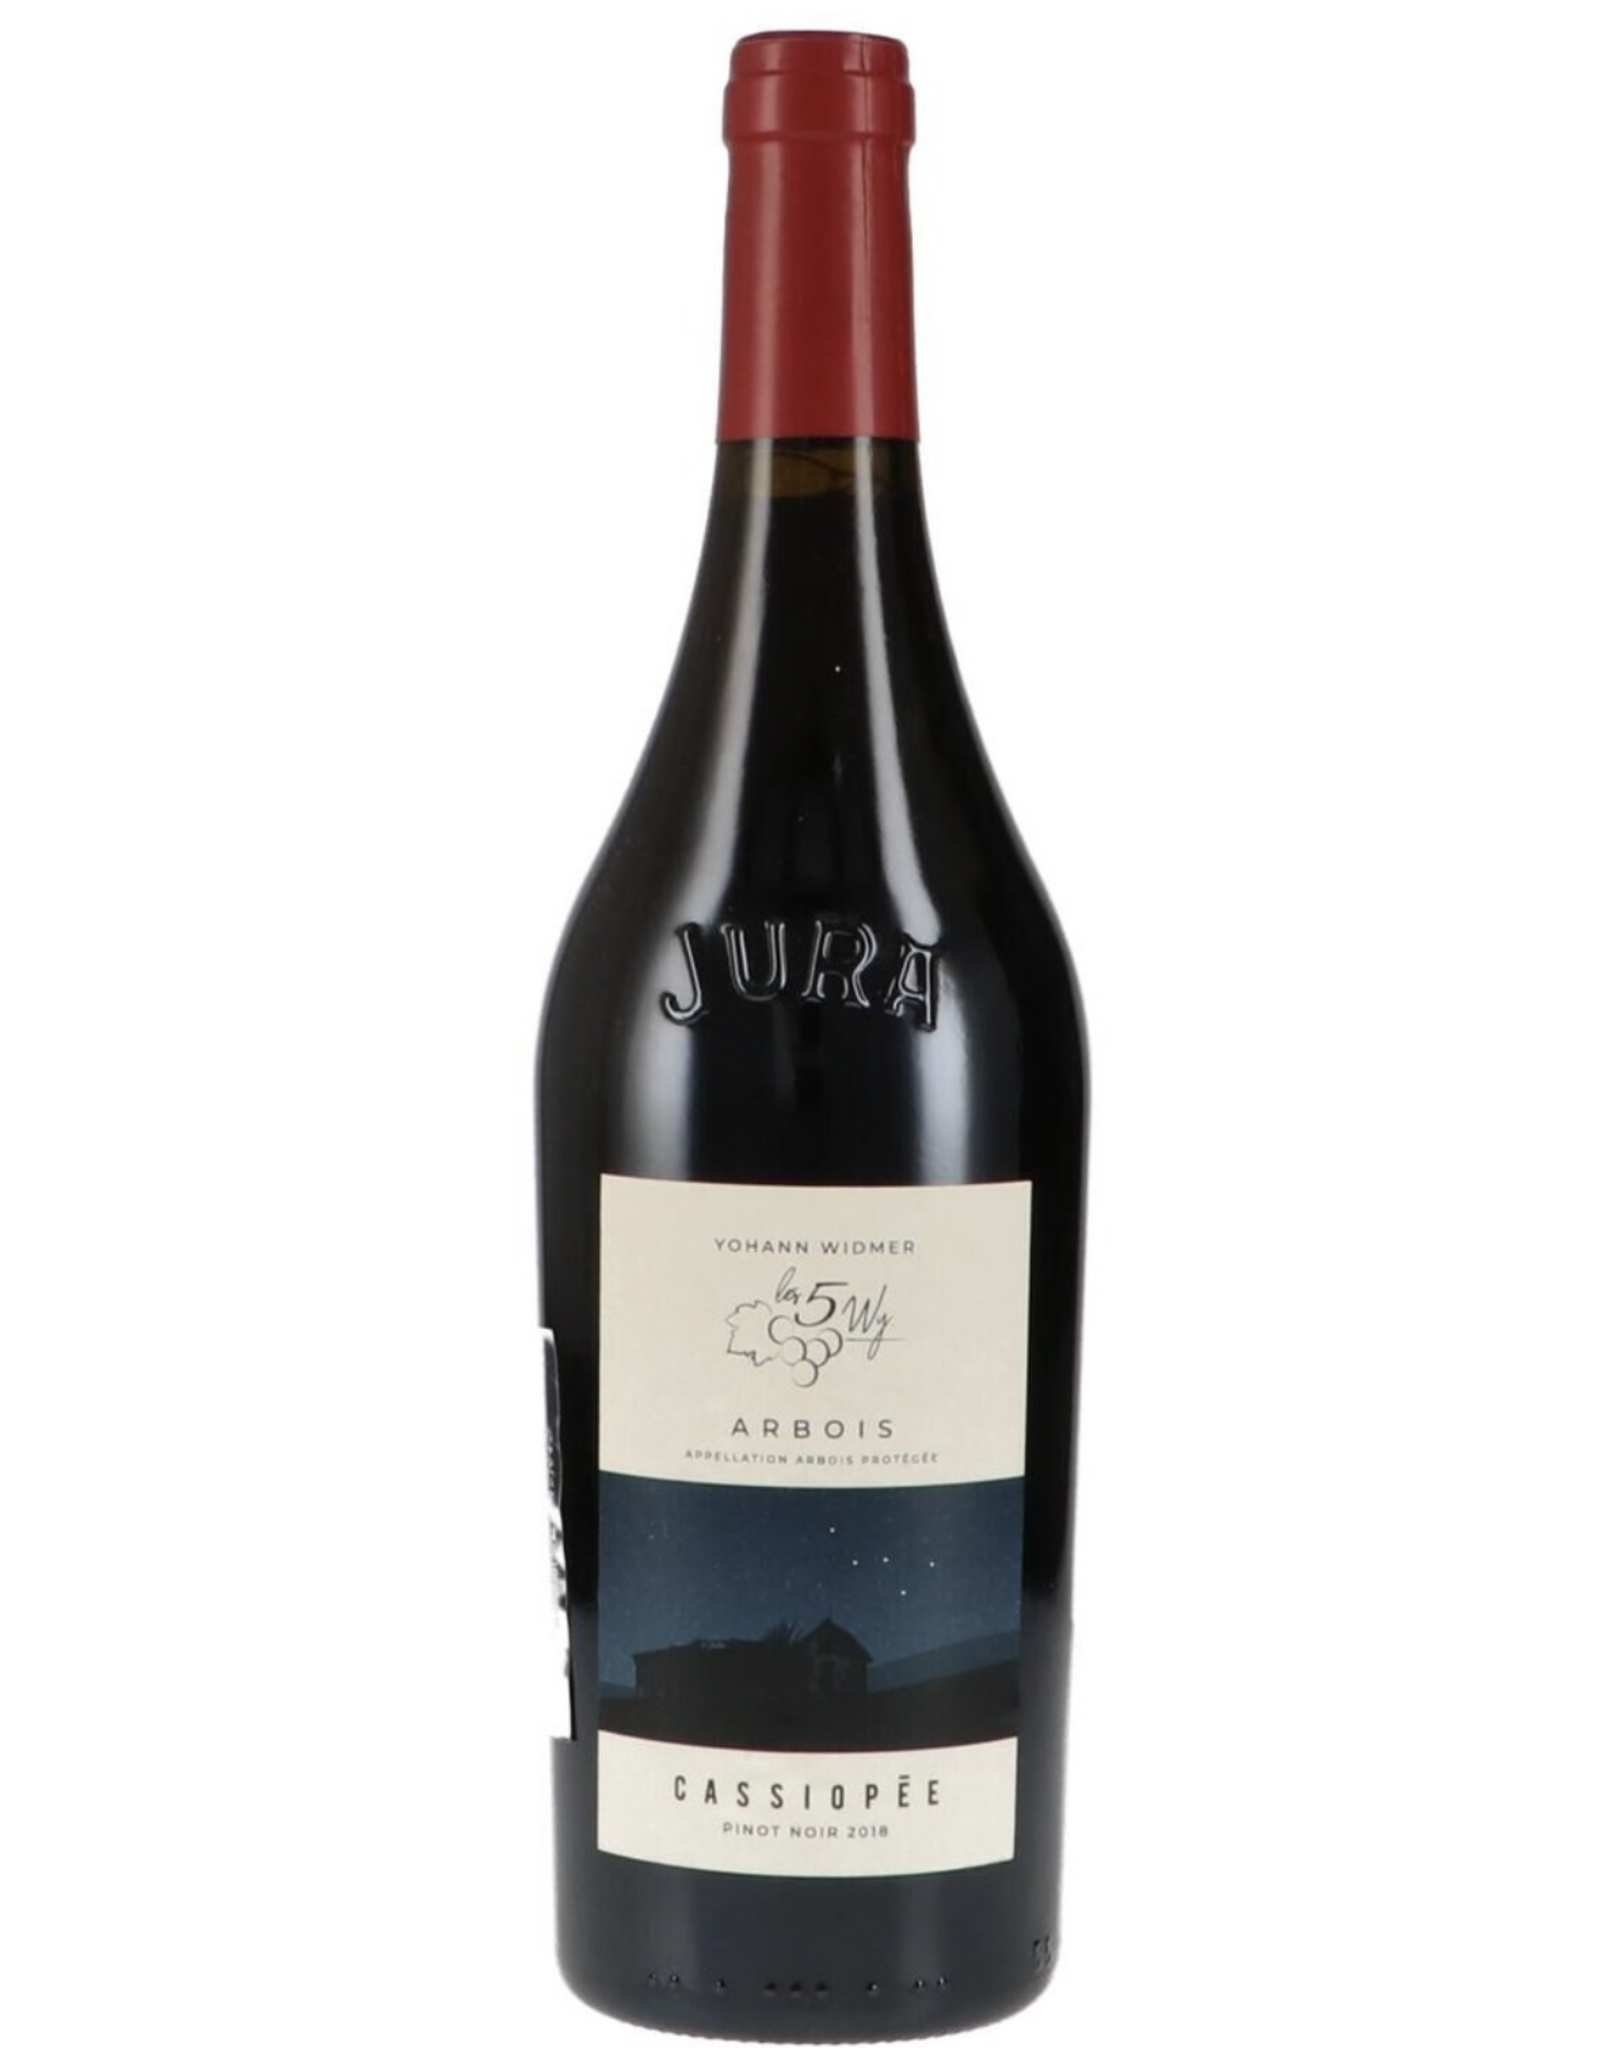 Yohann Widmer Arbois Cassiopee Pinot Noir 2020 (Jura)